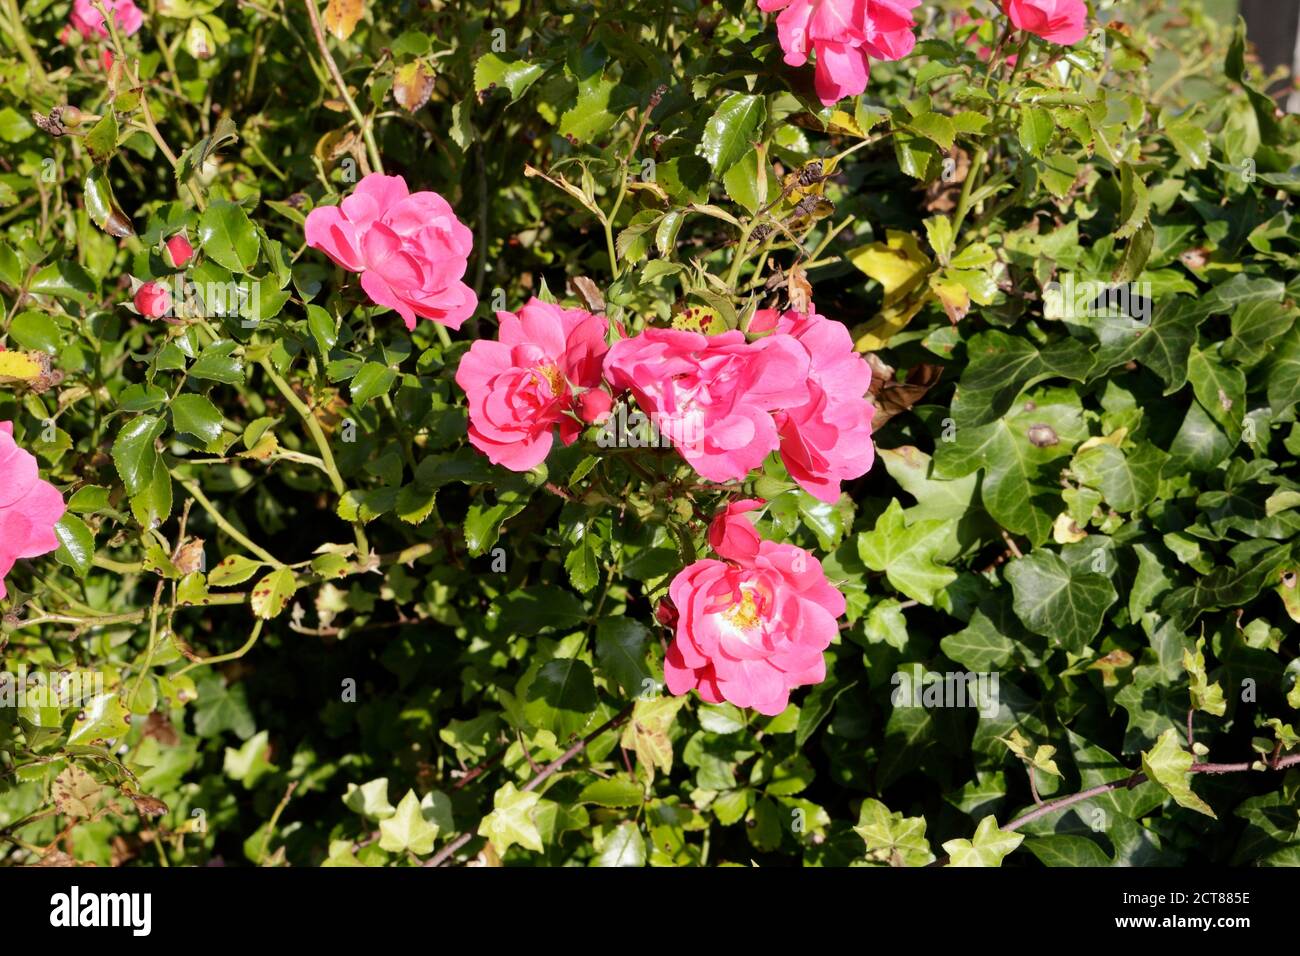 Roter Rosenbusch wächst wild, rote Blüten, blühende Pflanze Stockfotografie  - Alamy